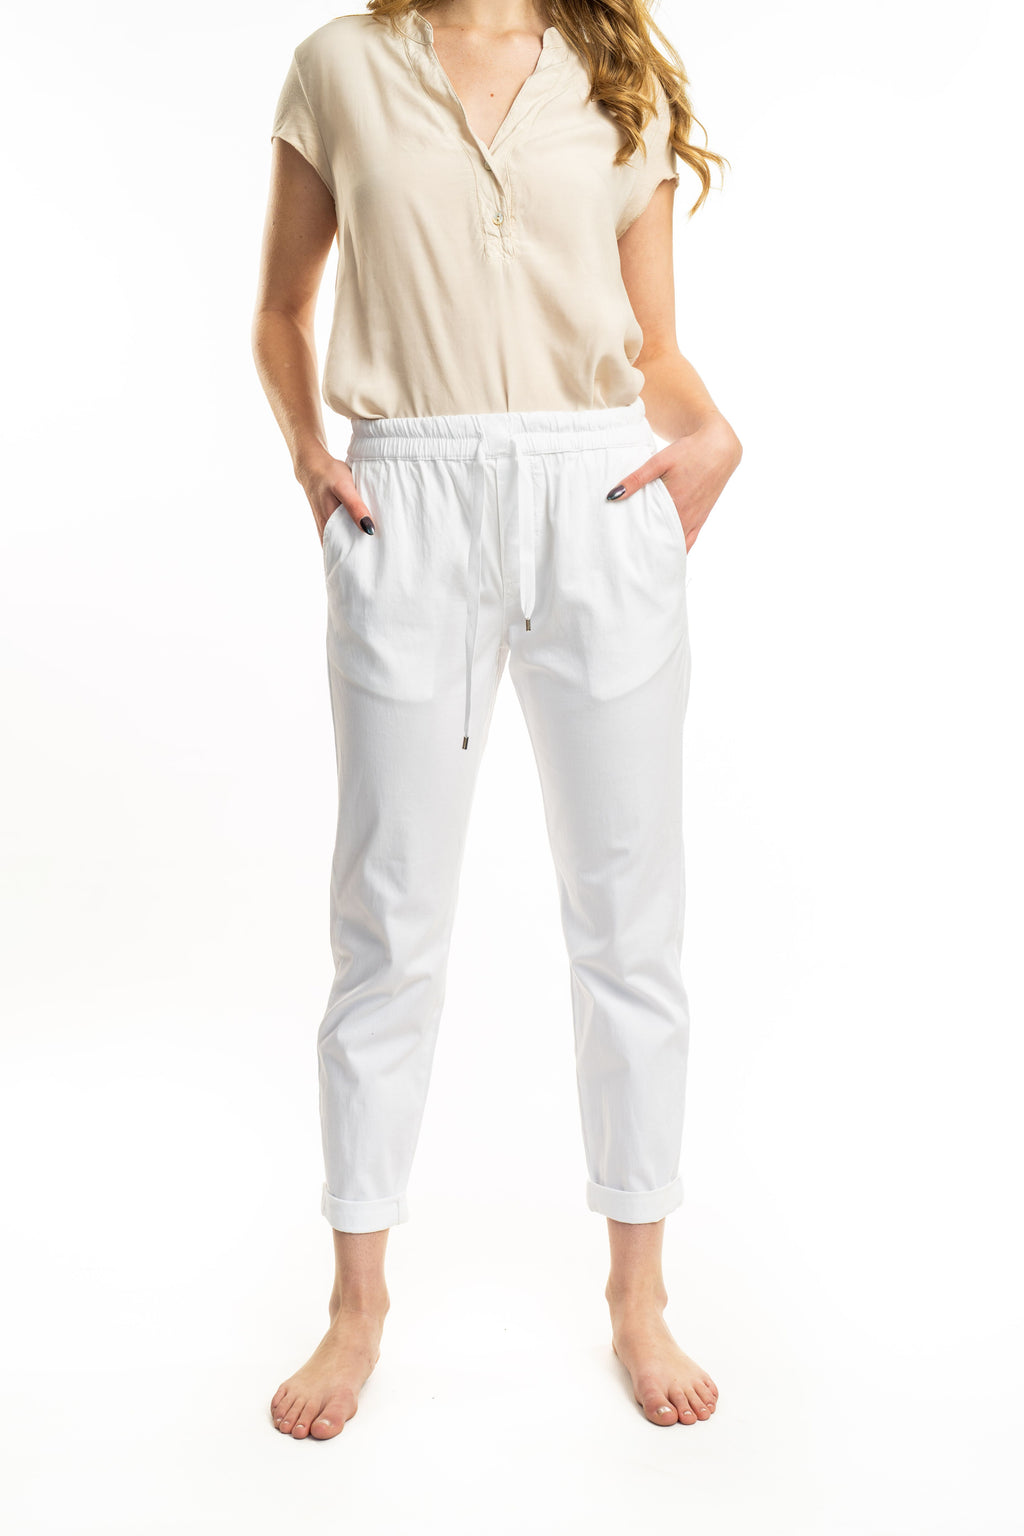 AnV S23 White Pants